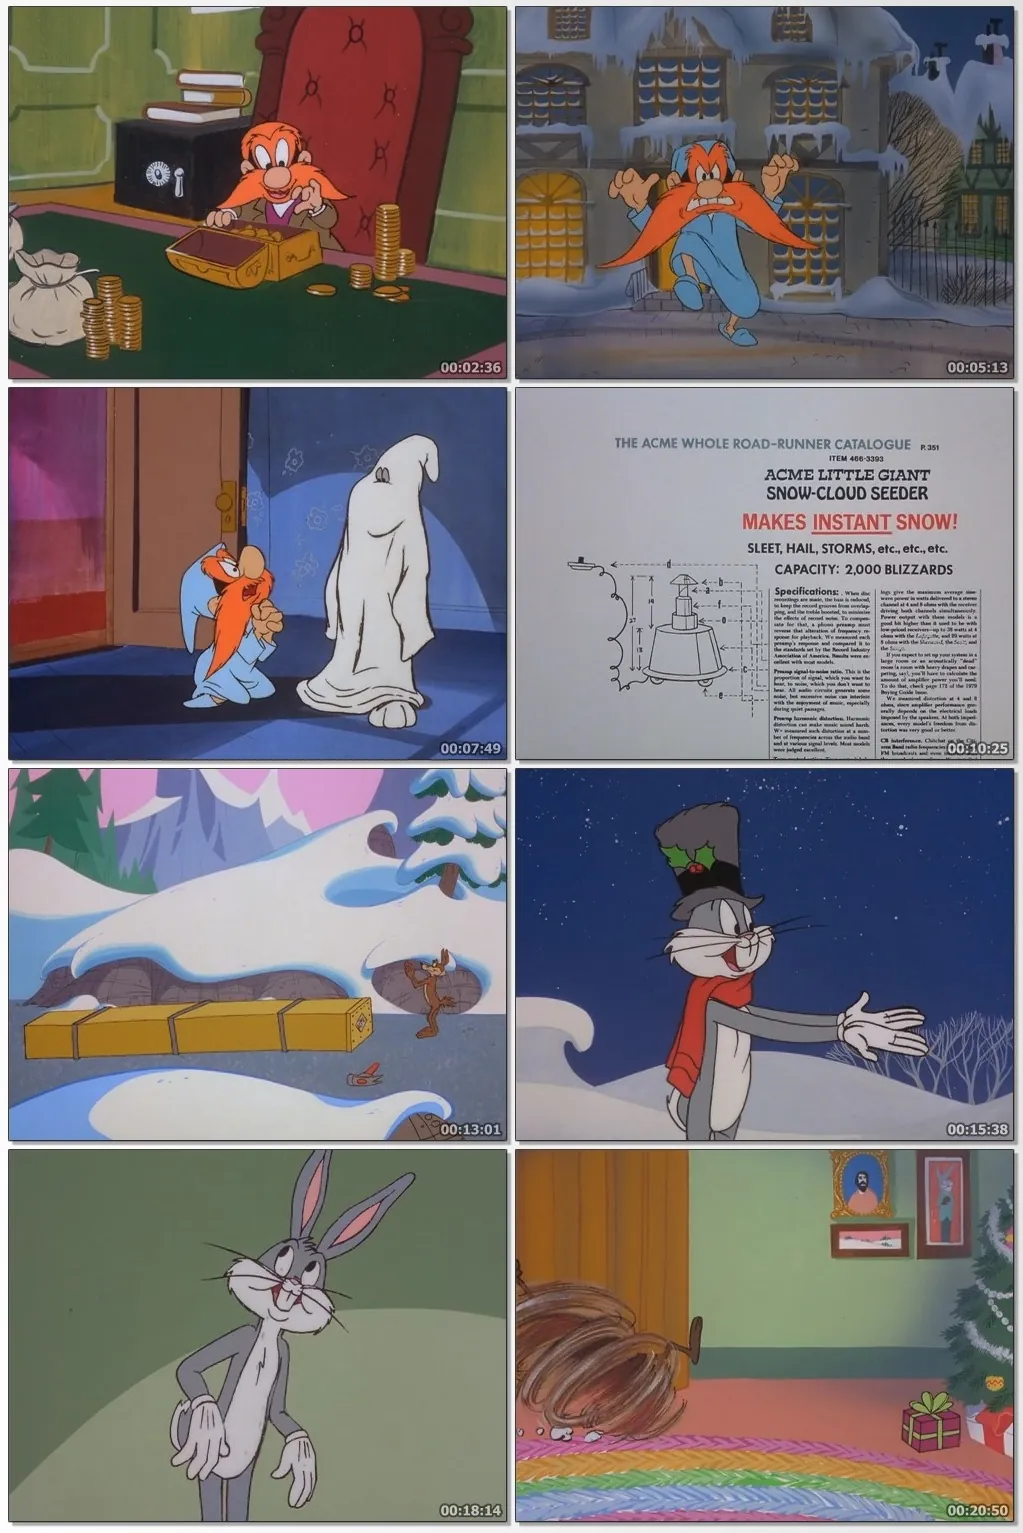 descargar cuentos de navidad de bugs bunny en hd 1080p pelicula 1979